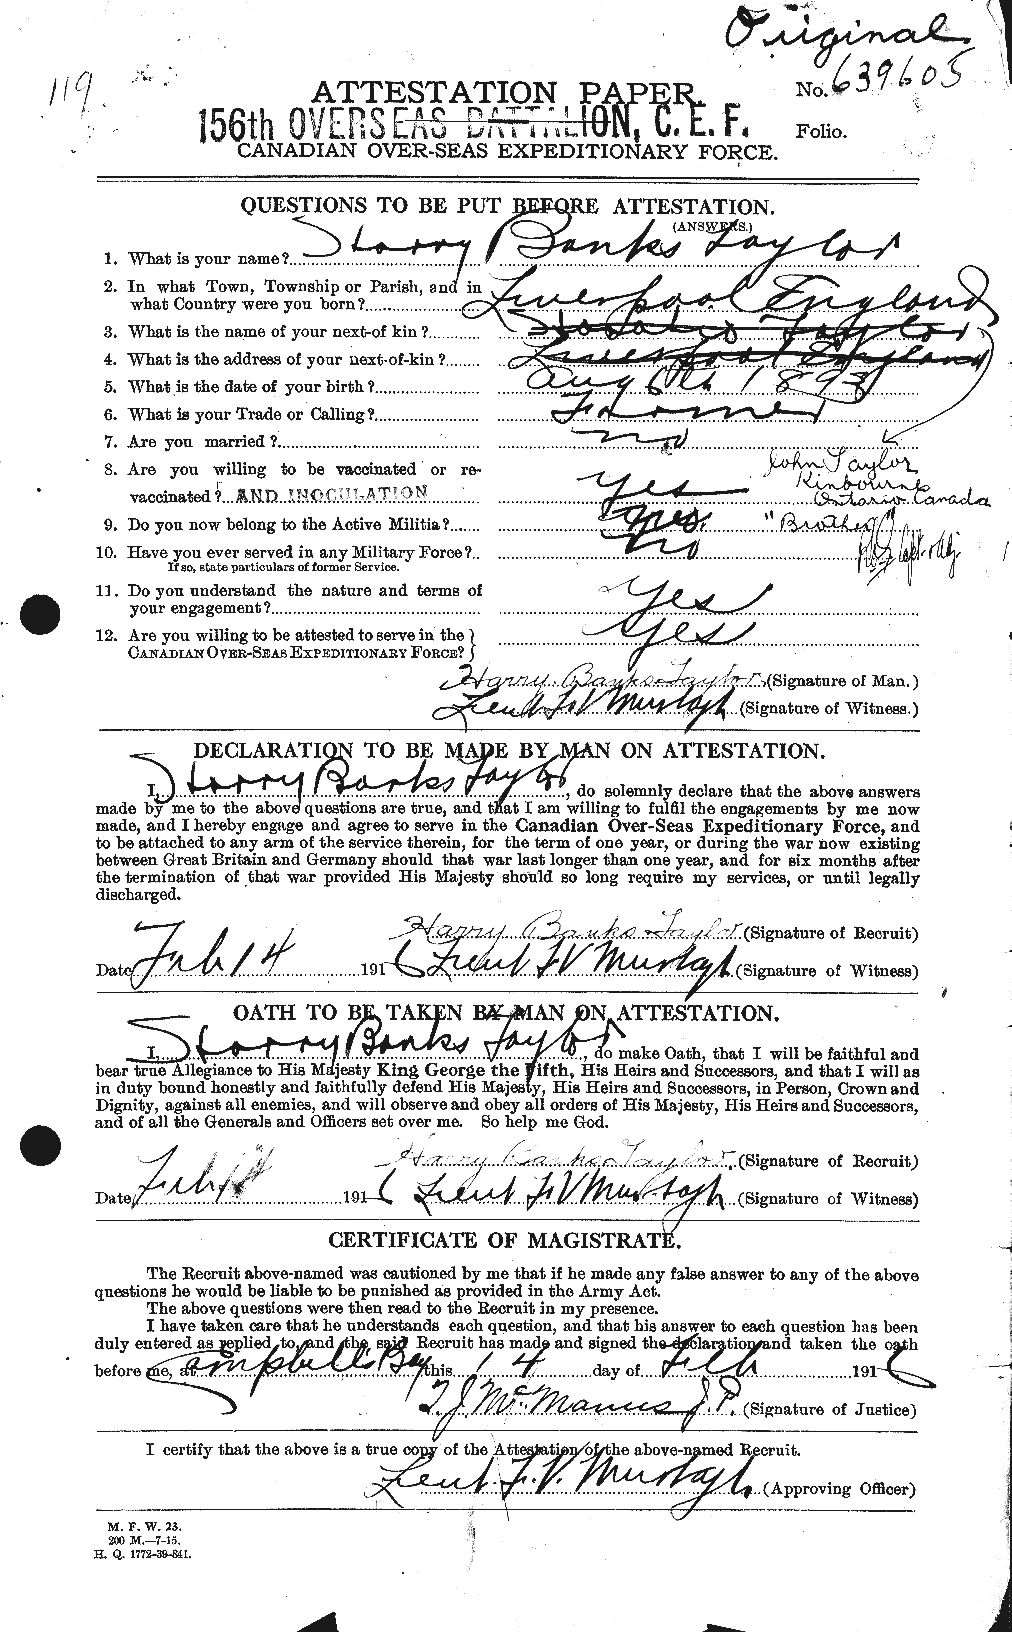 Dossiers du Personnel de la Première Guerre mondiale - CEC 626484a